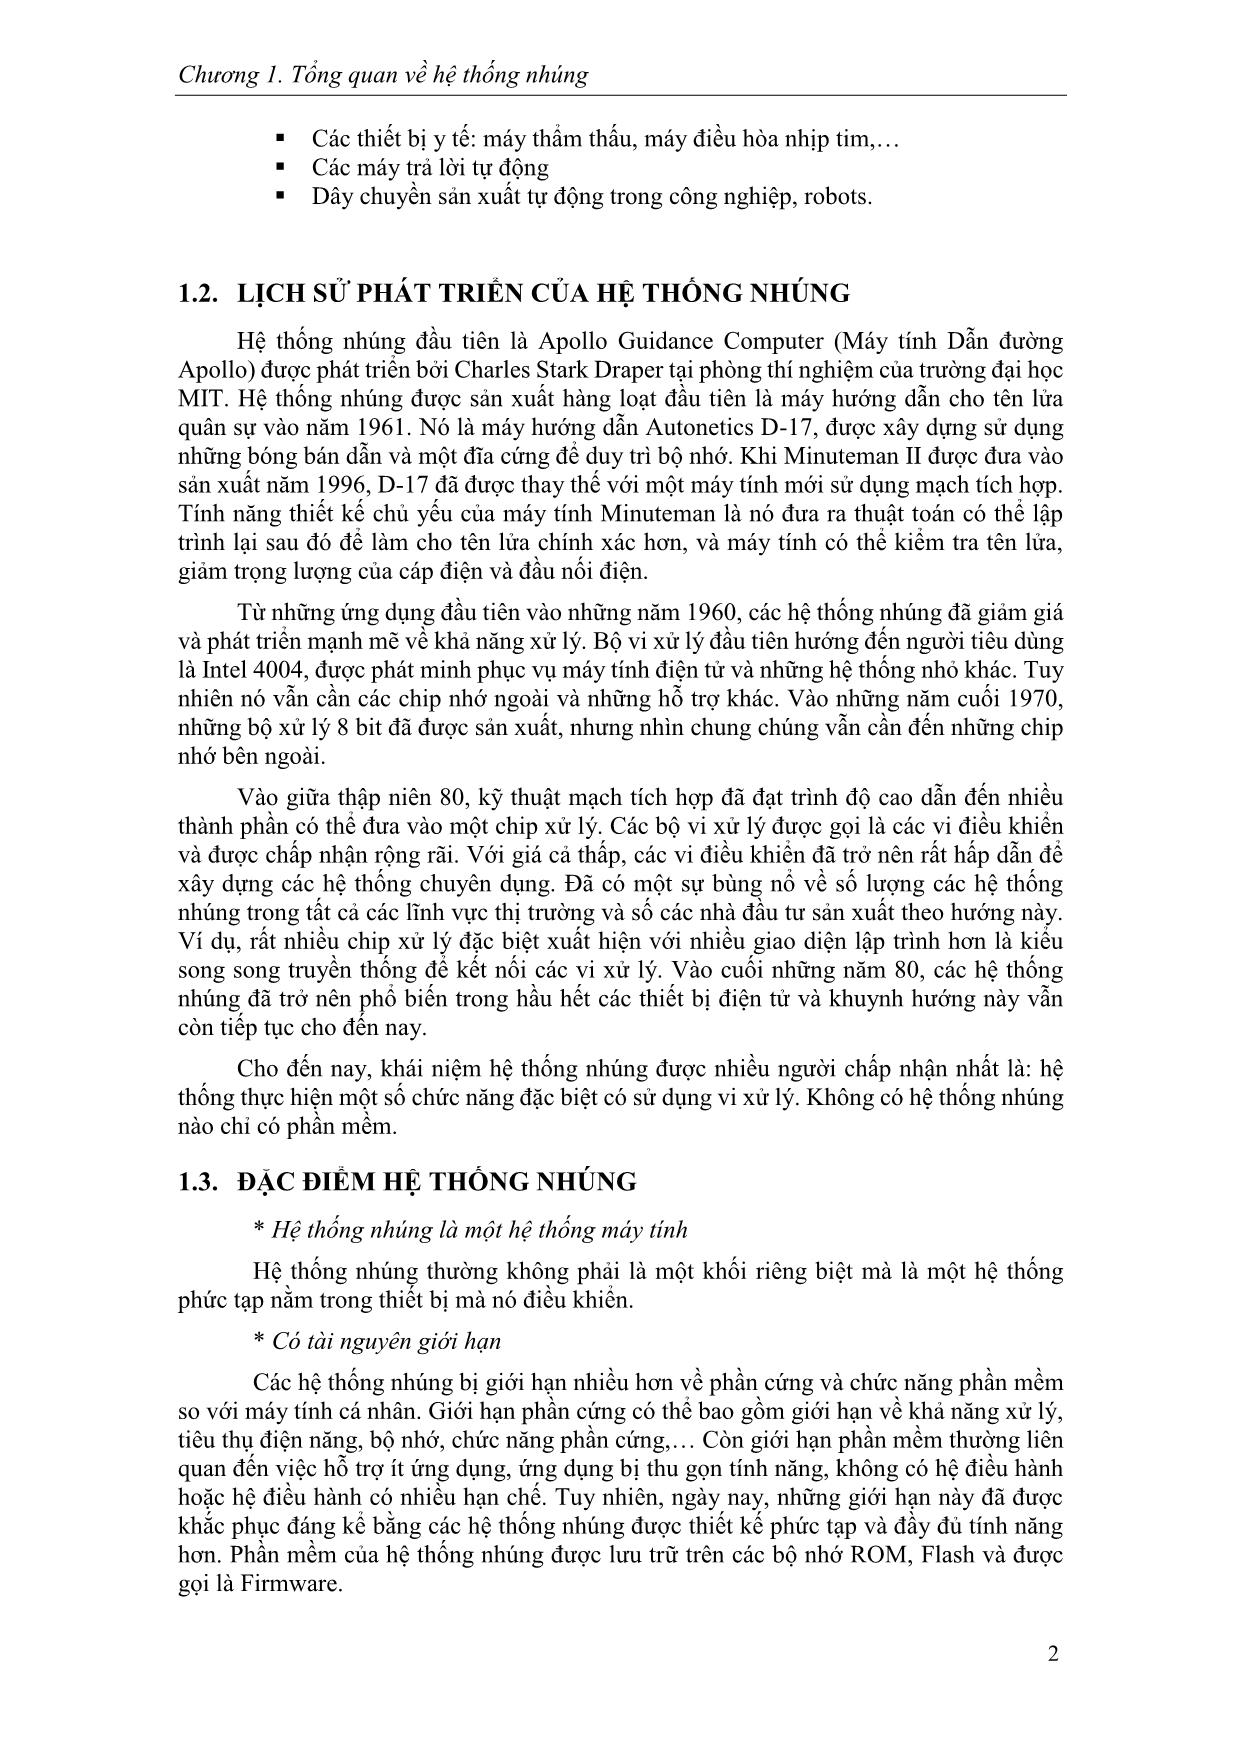 Giáo trình Hệ thống nhúng (Phần 1) trang 6